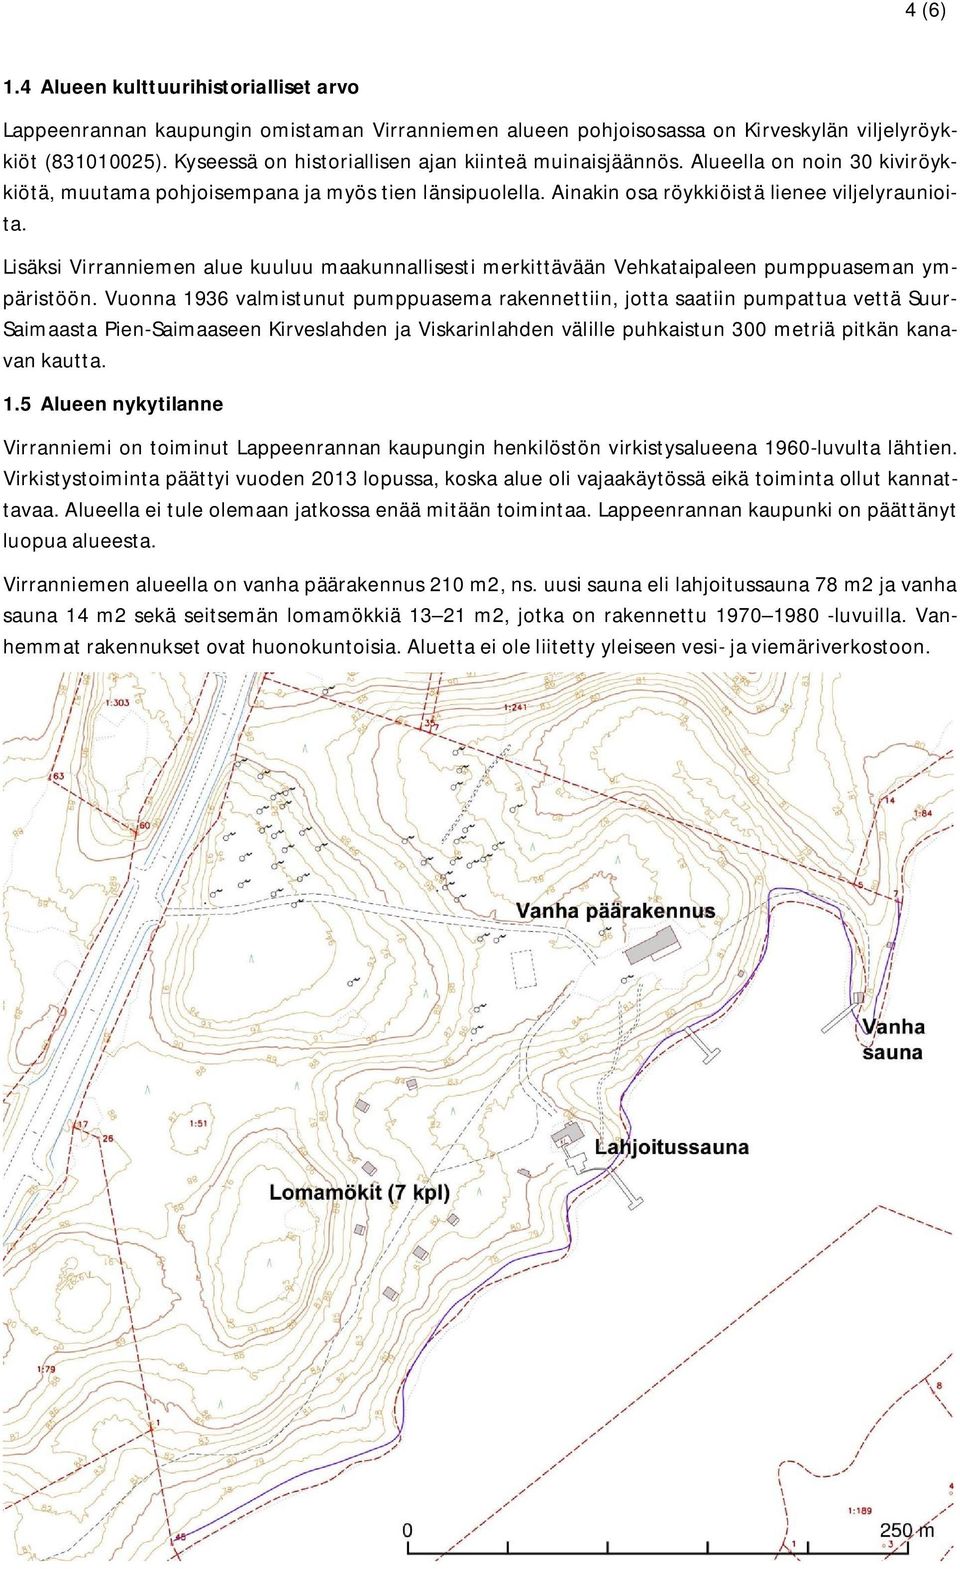 Lisäksi Virranniemen alue kuuluu maakunnallisesti merkittävään Vehkataipaleen pumppuaseman ympäristöön.